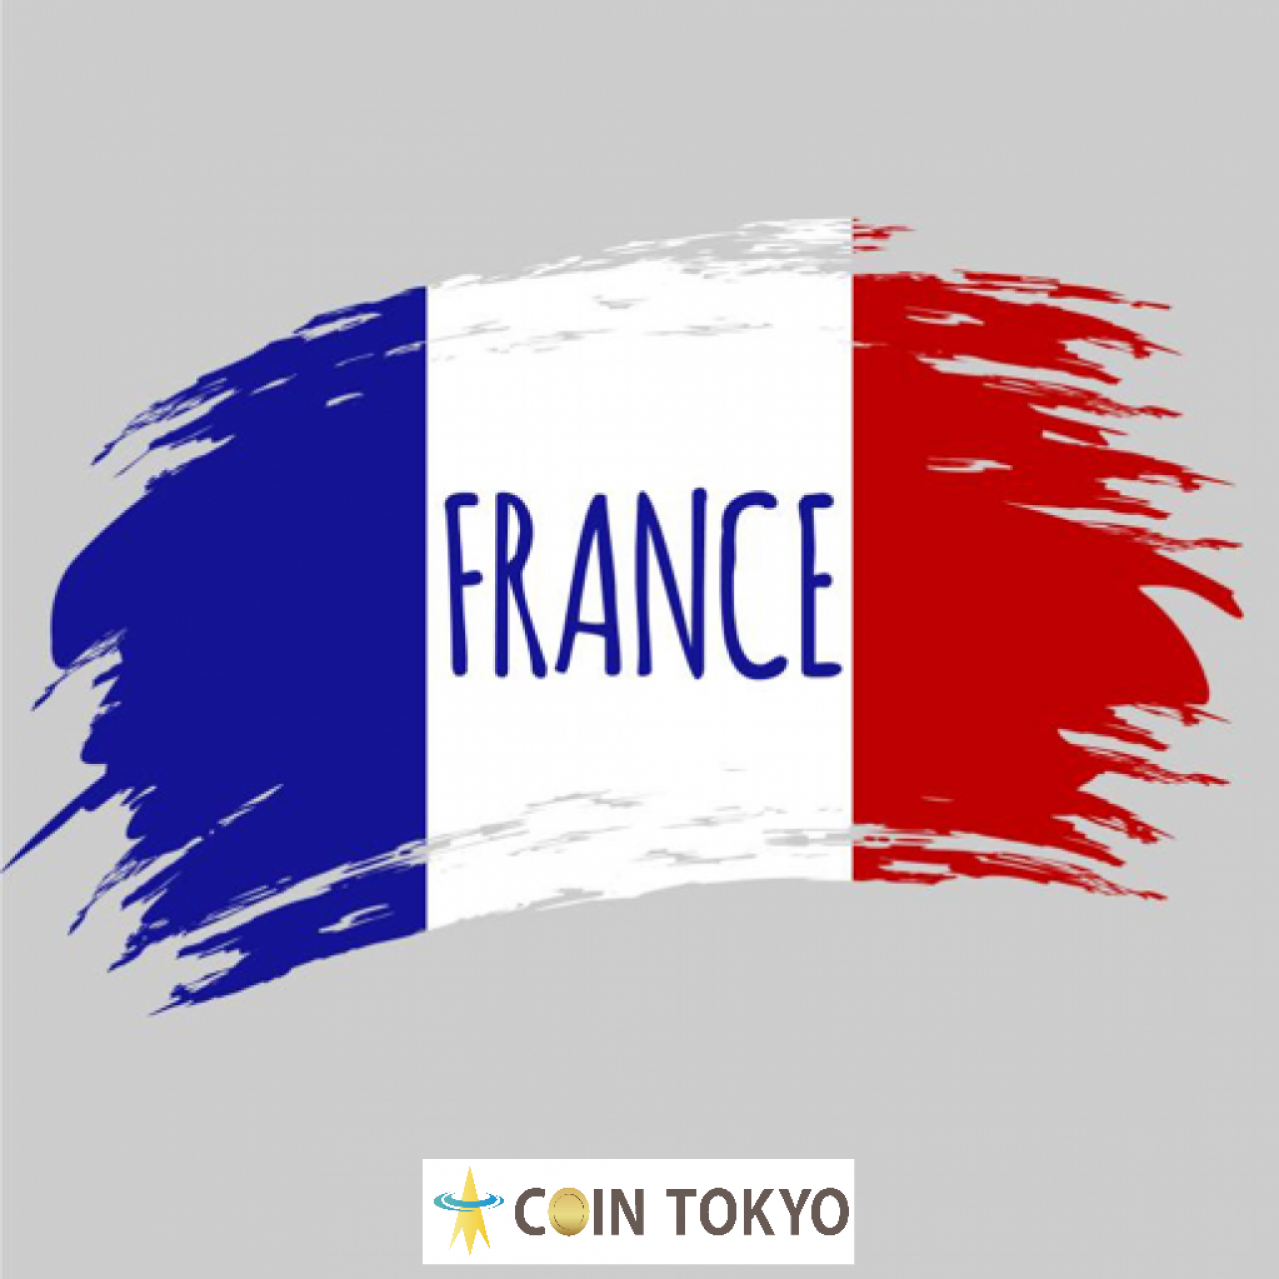 比特币优惠券在法国烟草商店重新开放-虚拟货币新闻网站Coin Tokyo